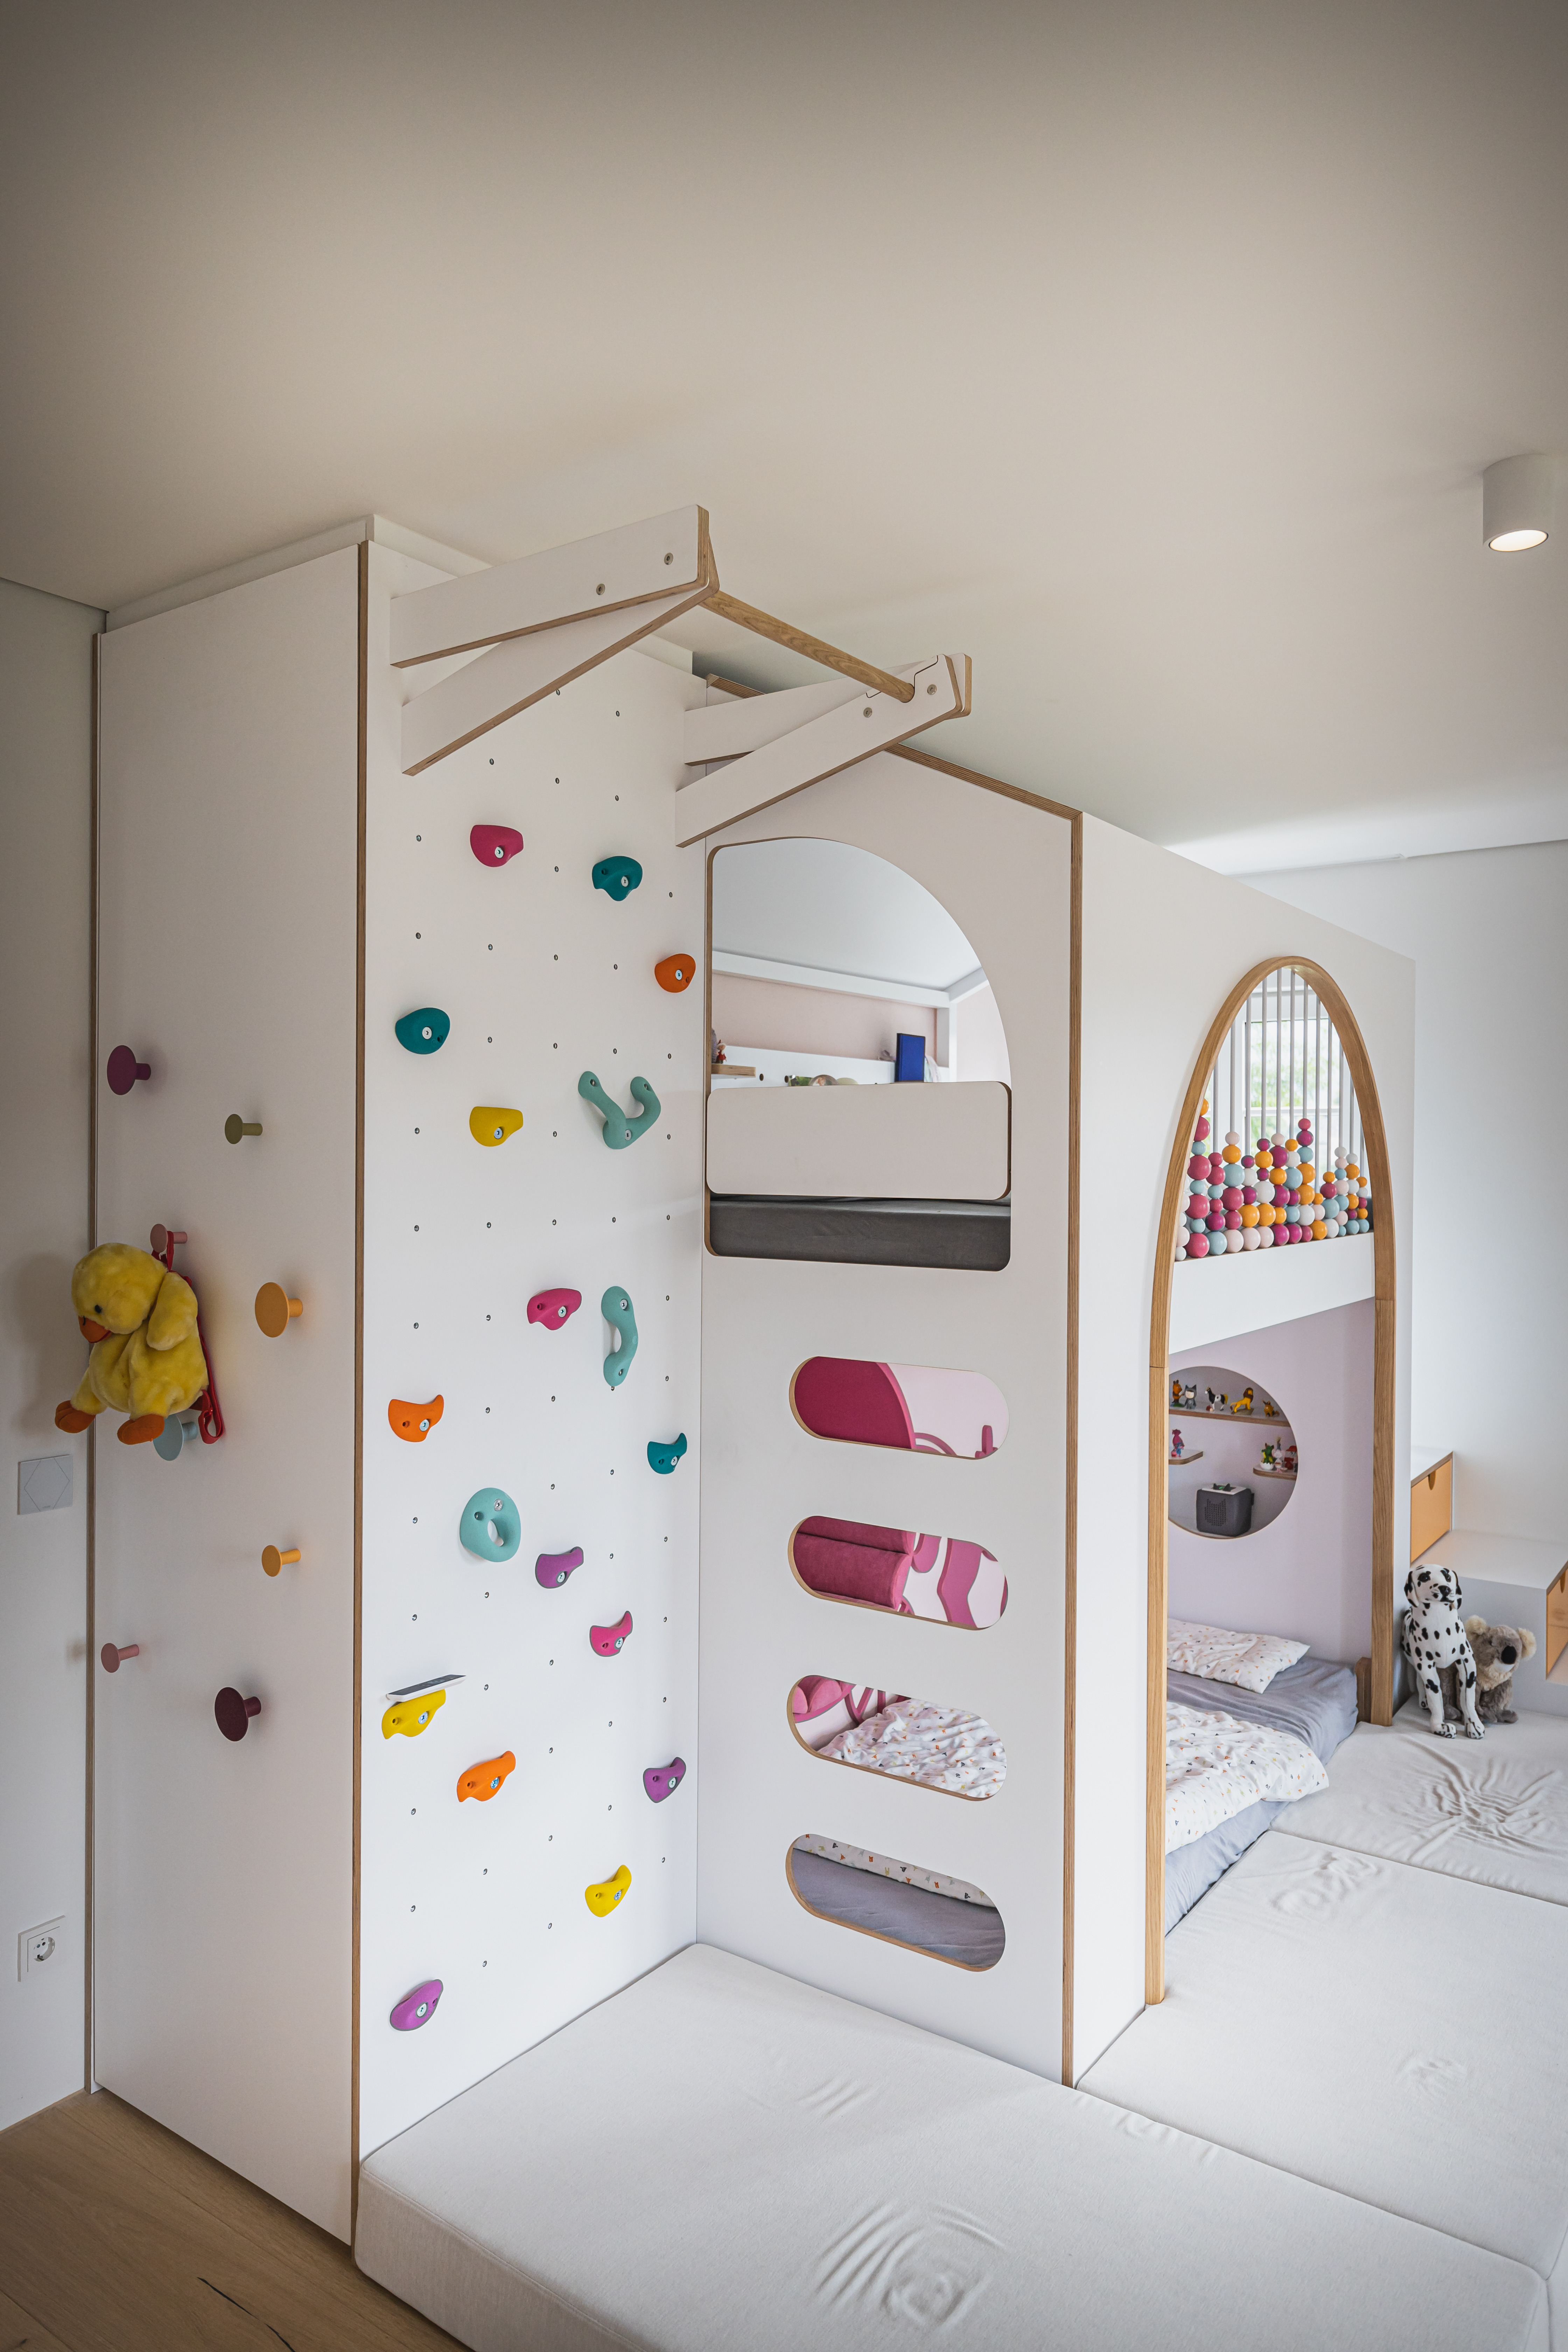 Були втілені всі побажання: Ліжко-горище, простір для зберігання та стіна для скелелазіння в дитячій кімнаті. 